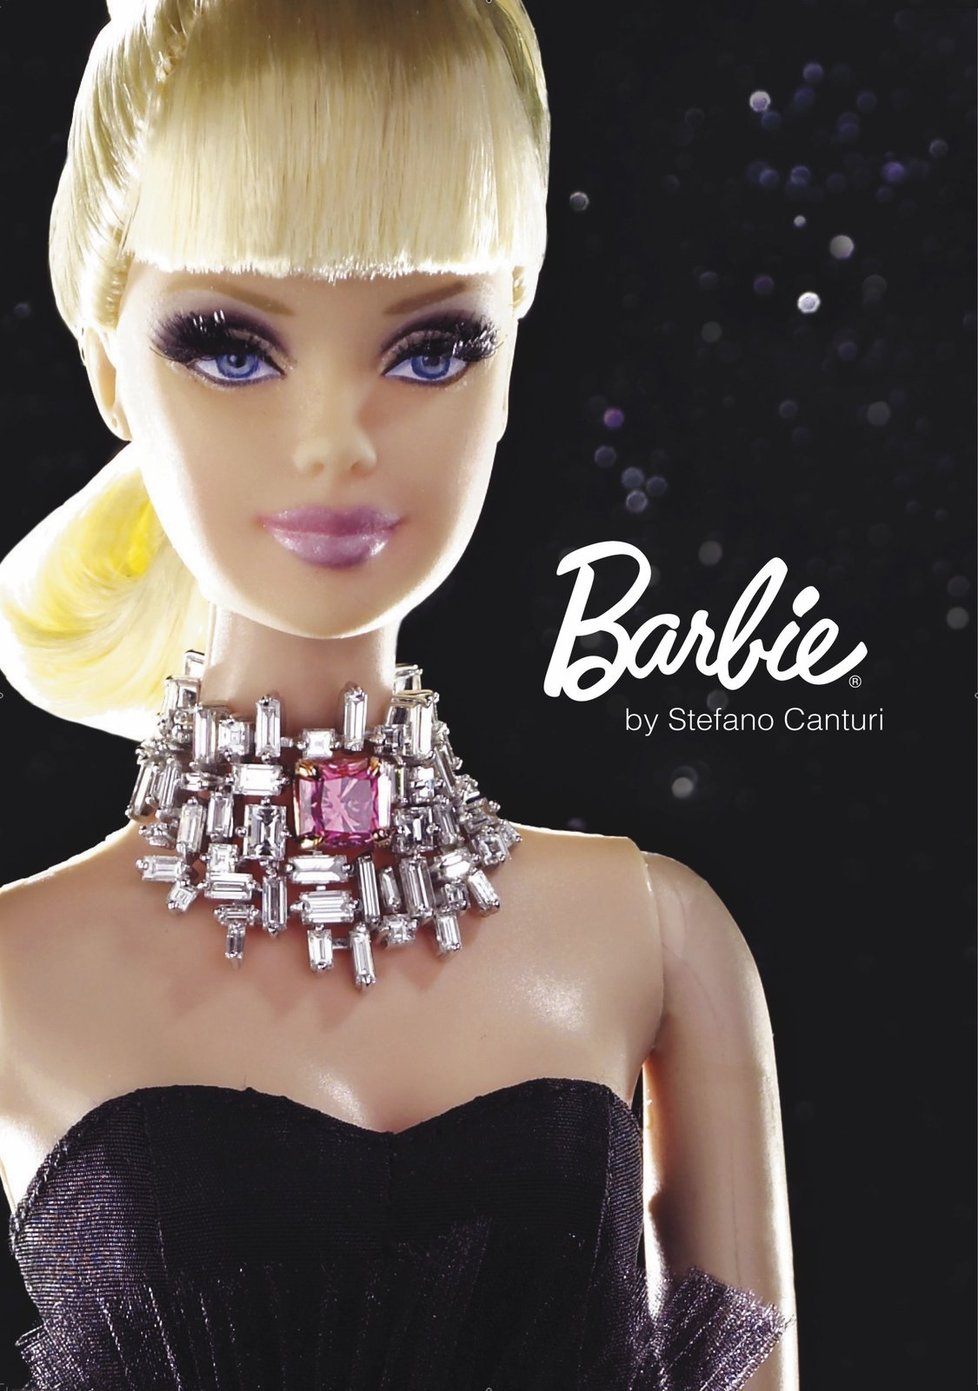 Takto vypadá původní plastiková barbie. Lolita se od ní moc neliší.